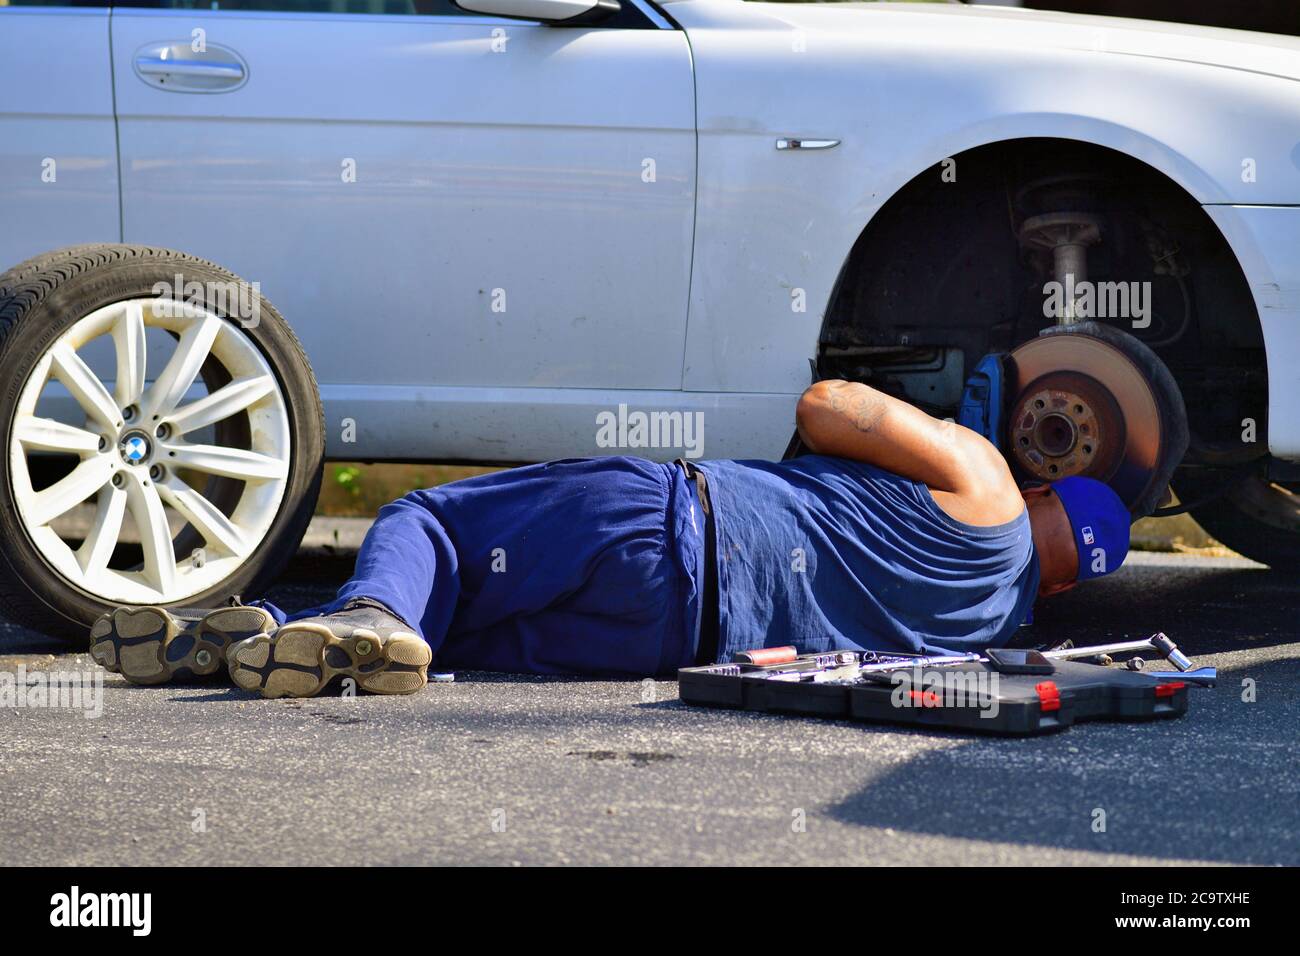 Franklin Park, Illinois, États-Unis. Lorsqu'il est prolongé sur le trottoir, un homme travaille pour terminer un travail de pause sur un véhicule dans la banlieue de Chicago. Banque D'Images